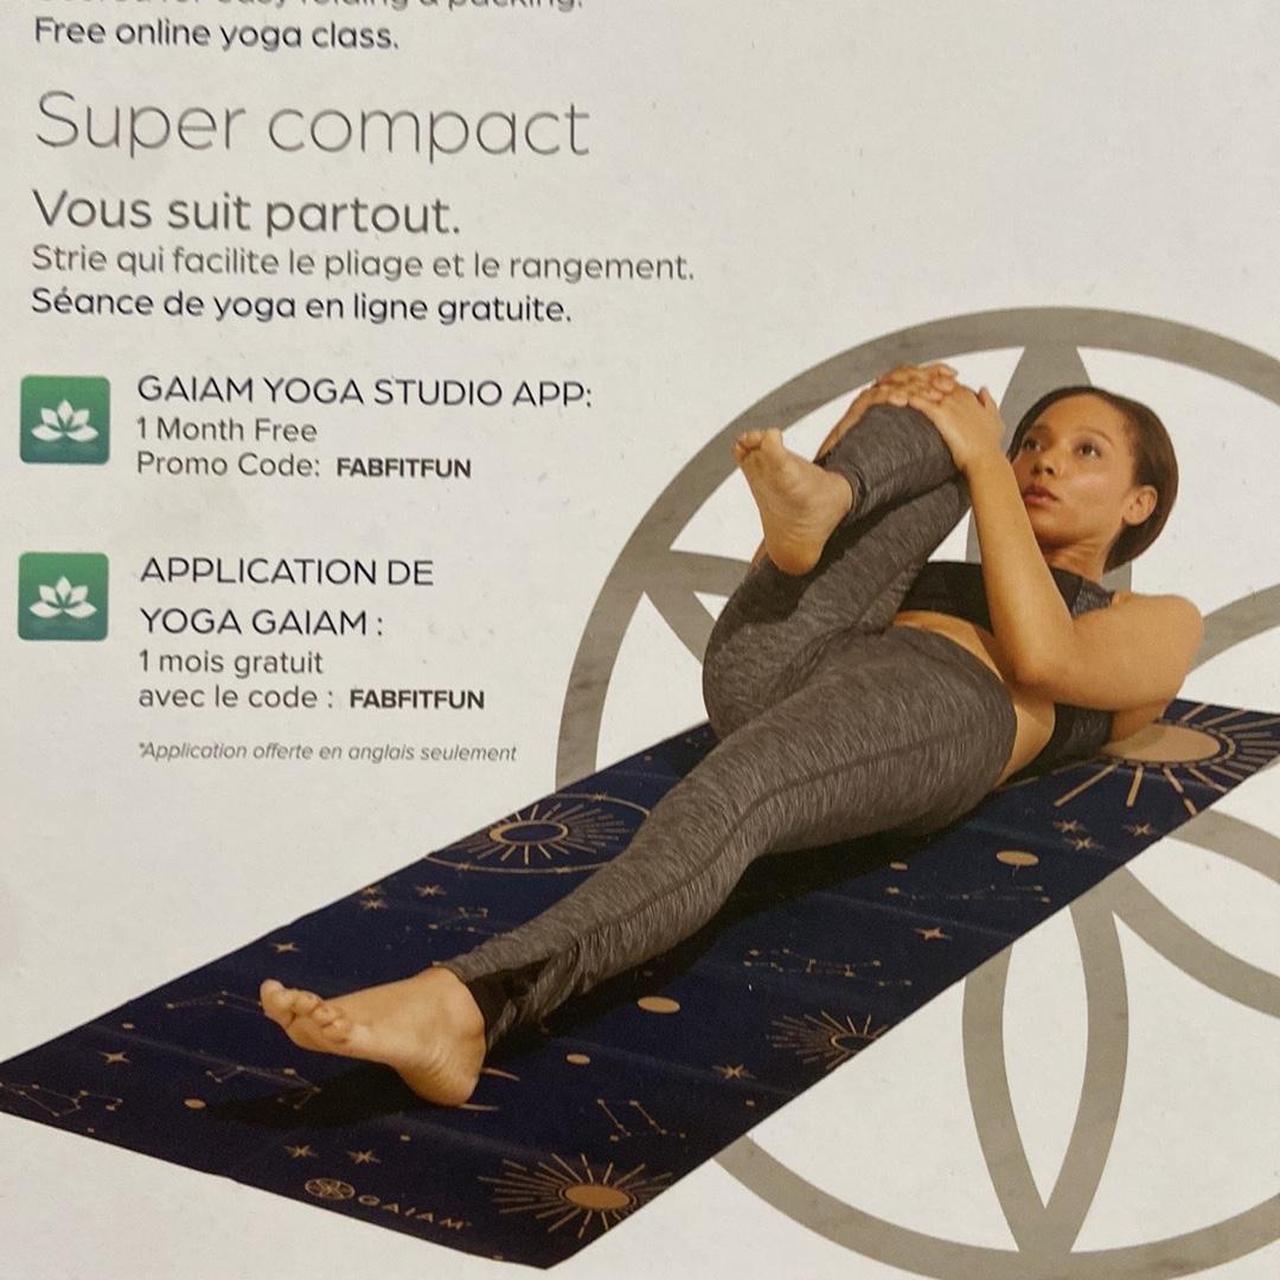 GAIAM foldable yoga mat. New in original packaging. - Depop